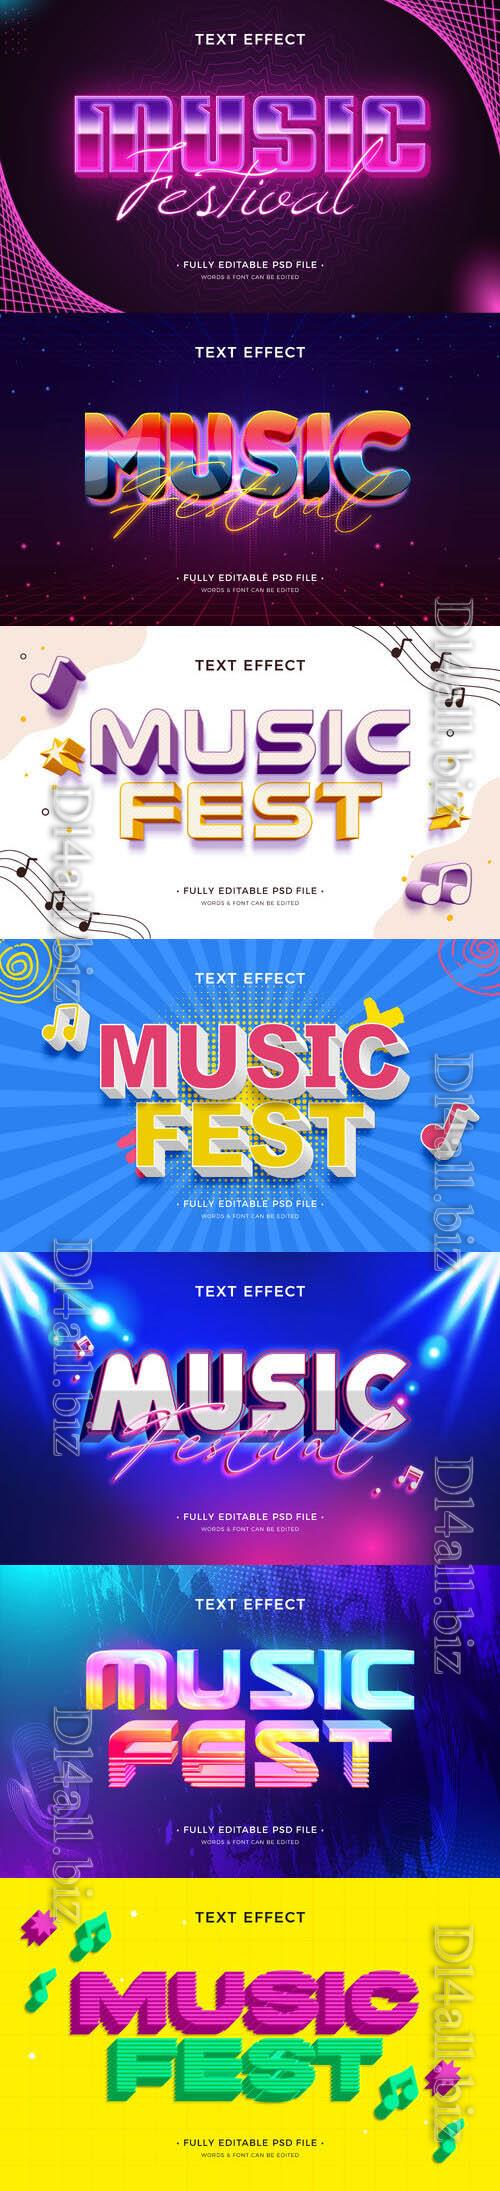 PSD music festival text effect